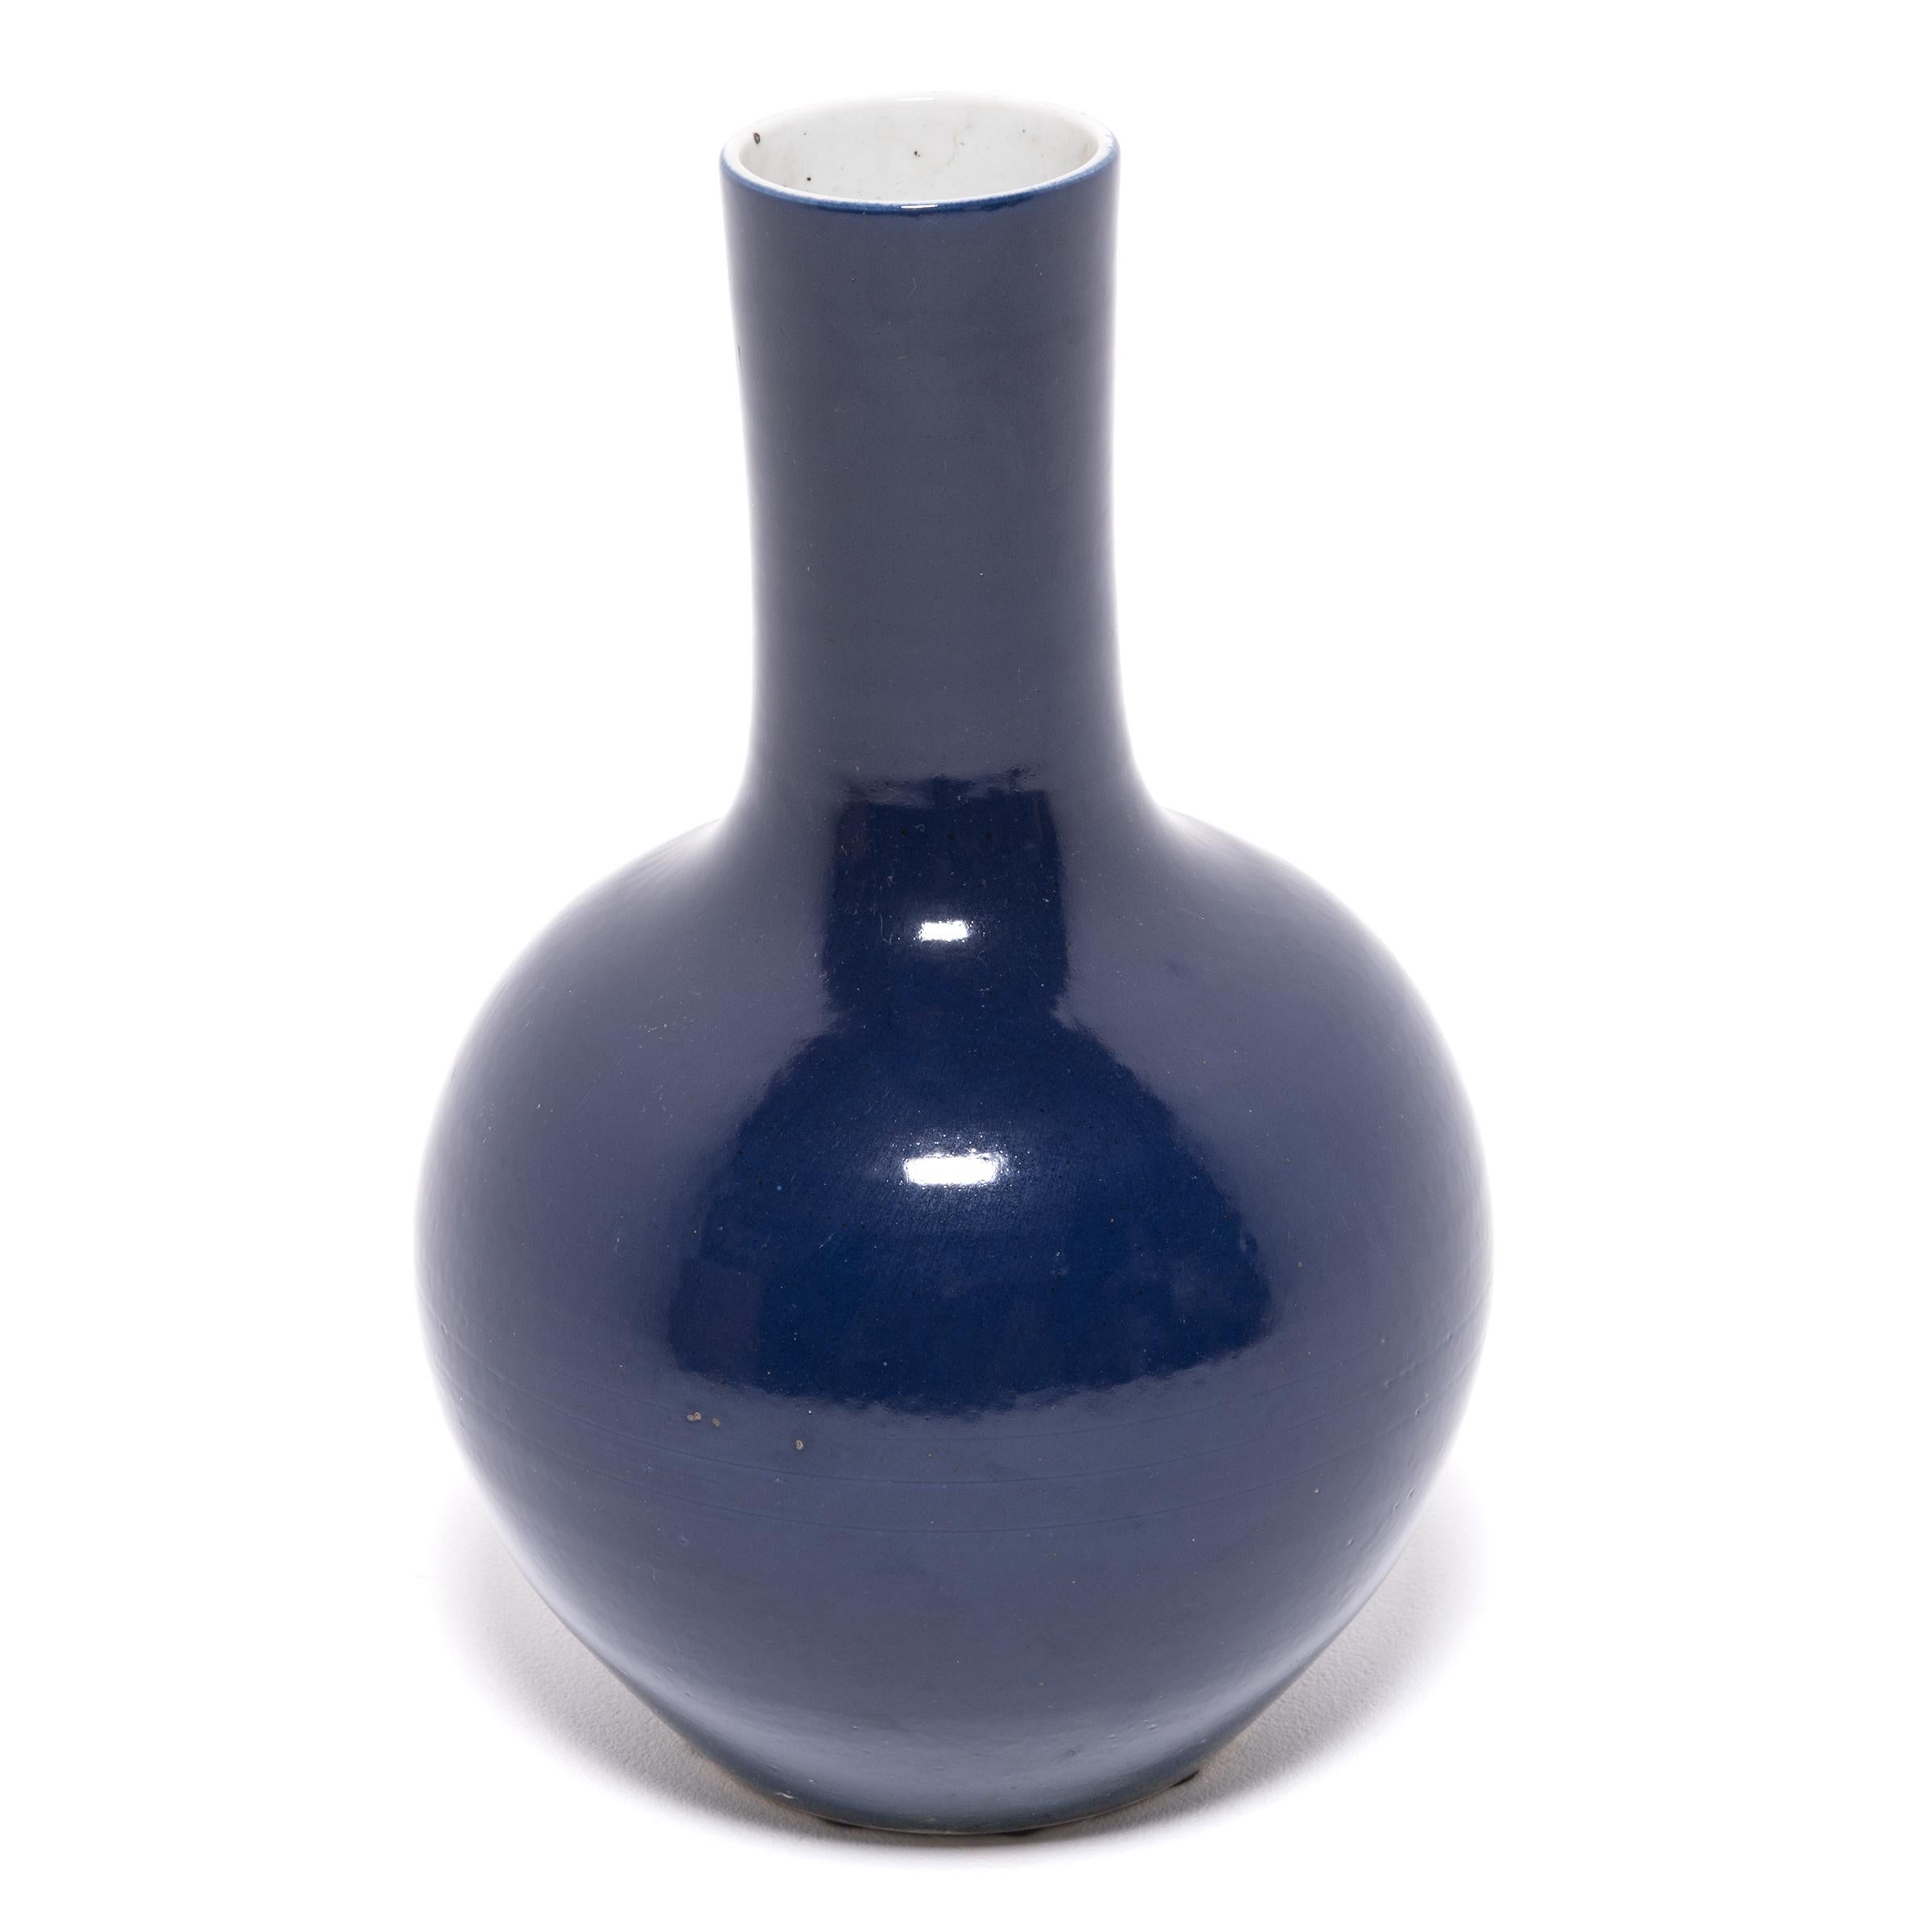 S'inspirant d'une longue tradition chinoise de céramiques monochromes, ce grand vase à col de cygne est recouvert d'une glaçure d'un bleu profond, rappelant un ciel nocturne sombre. Le vase présente un corps arrondi et globulaire et un col